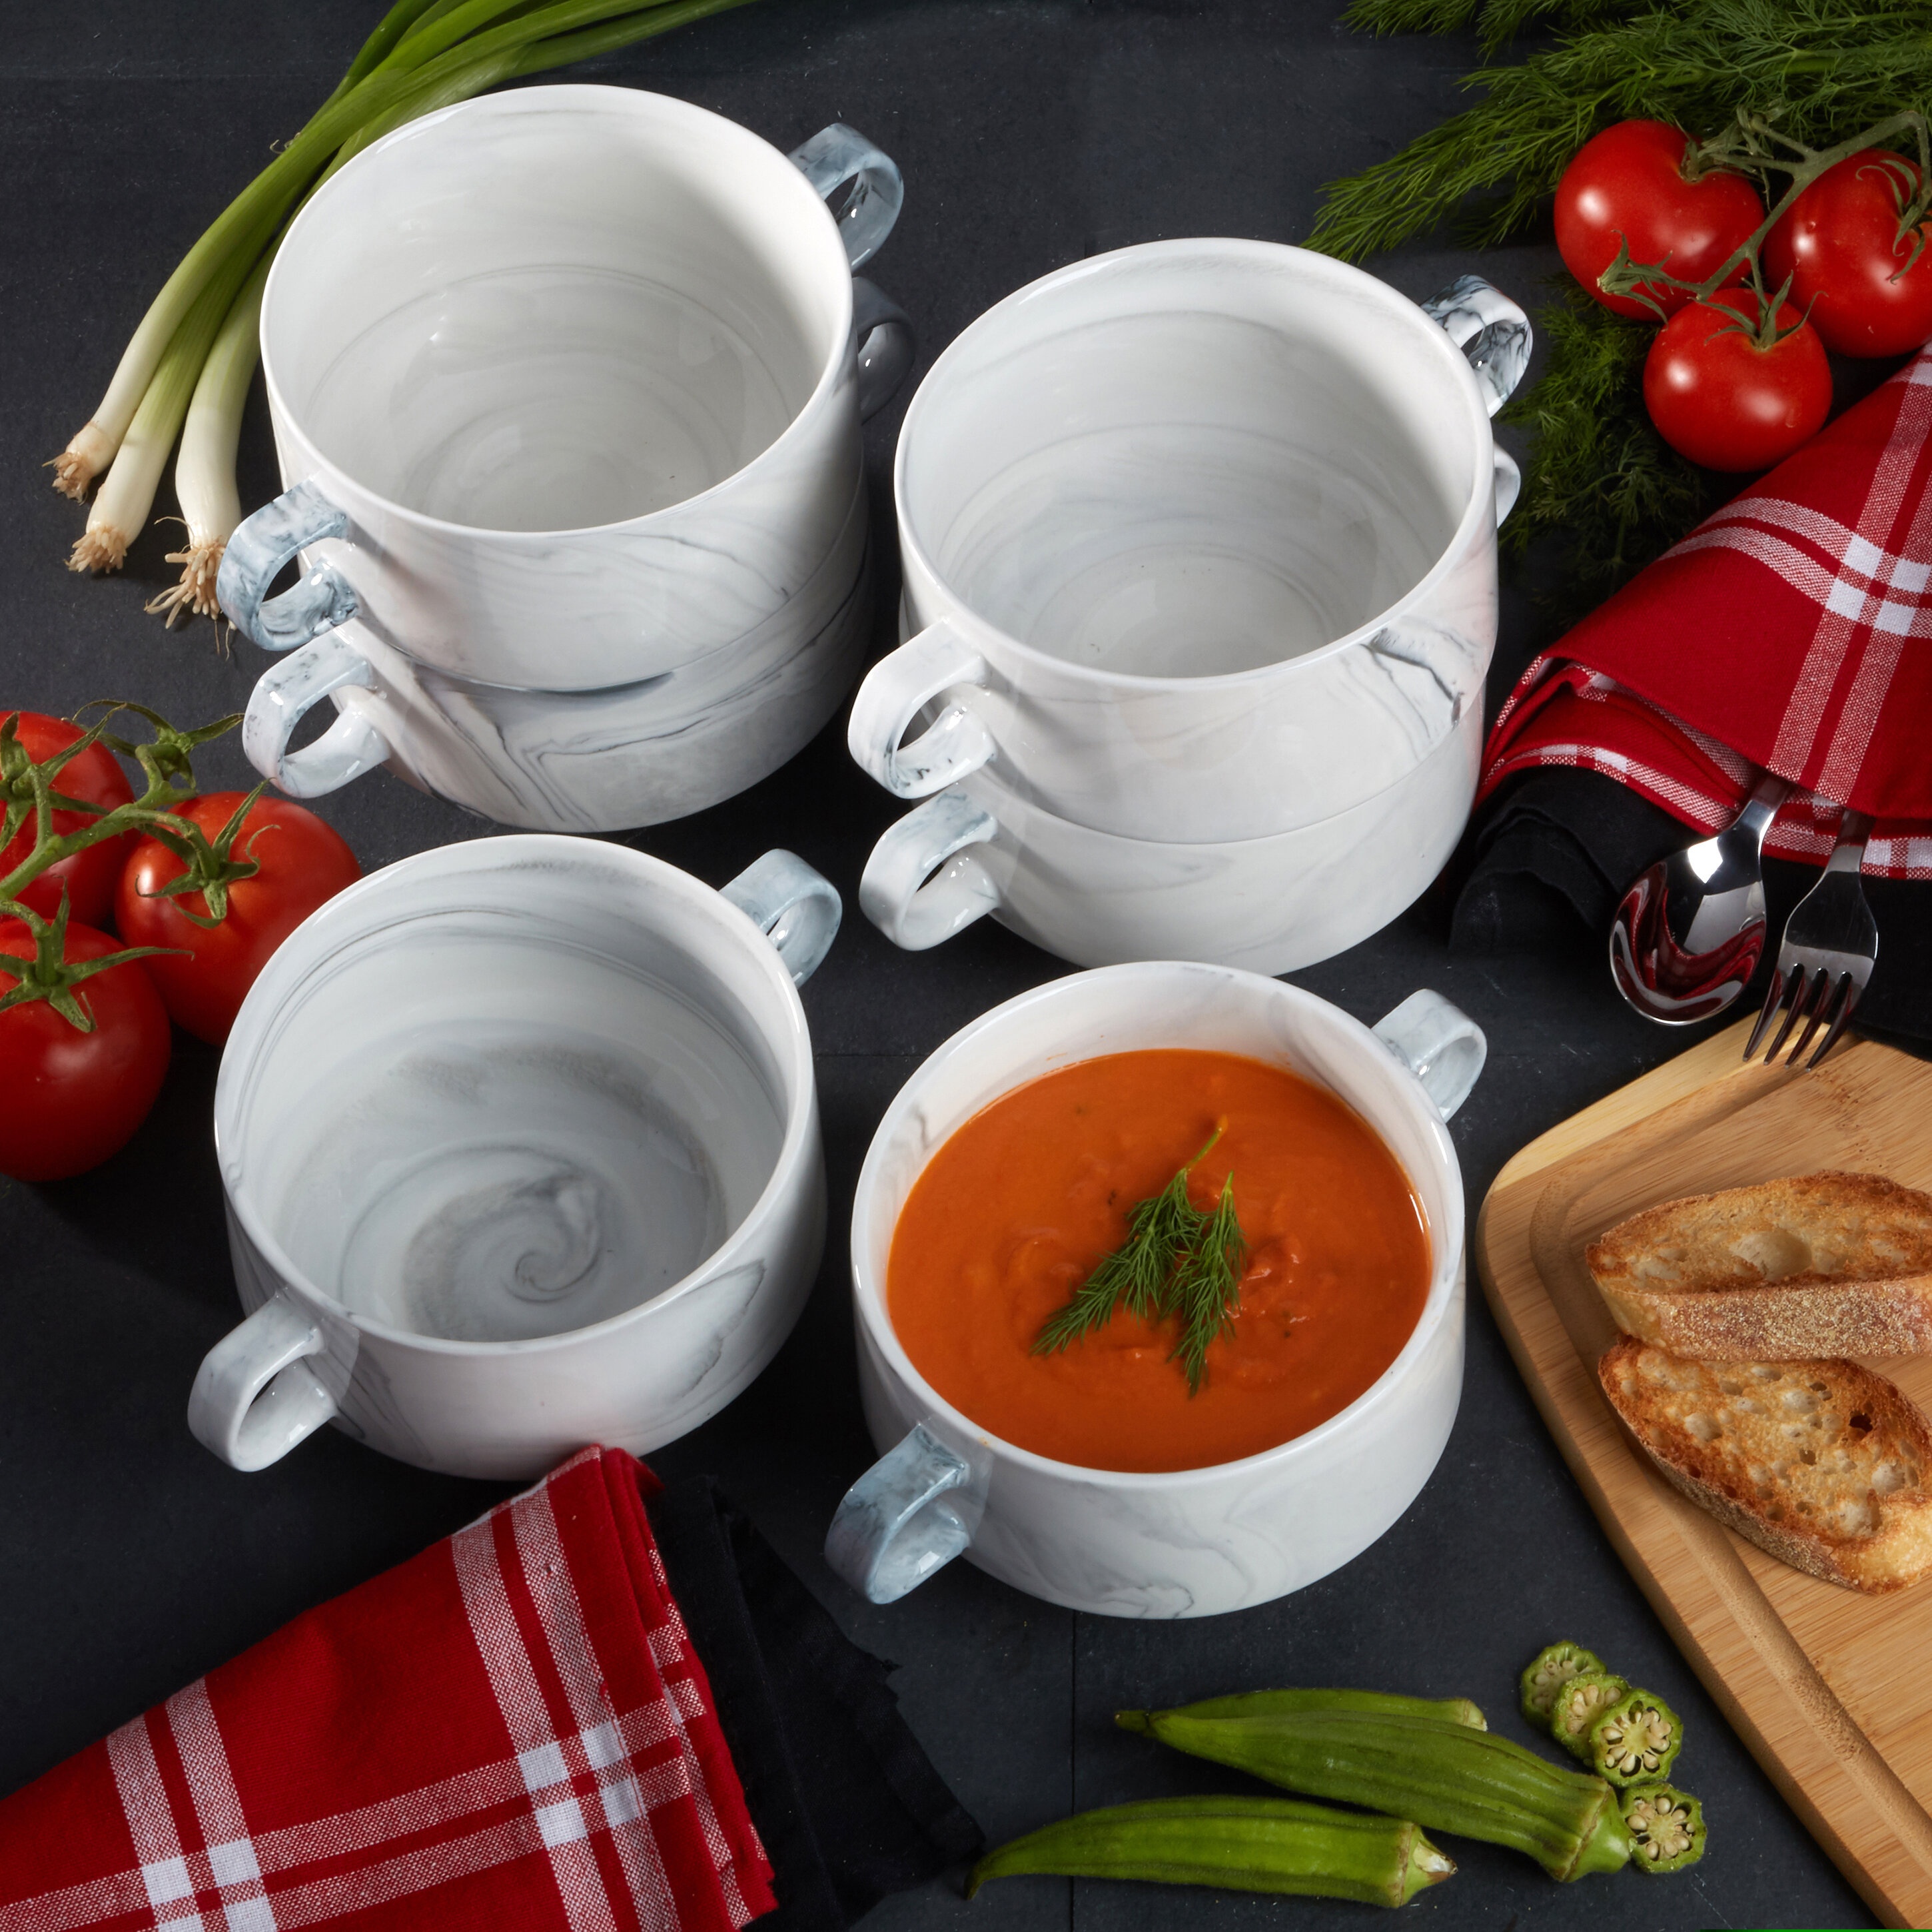 Kook Soup Cups: Microwave Safe, Dishwasher Safe, Freezer Safe